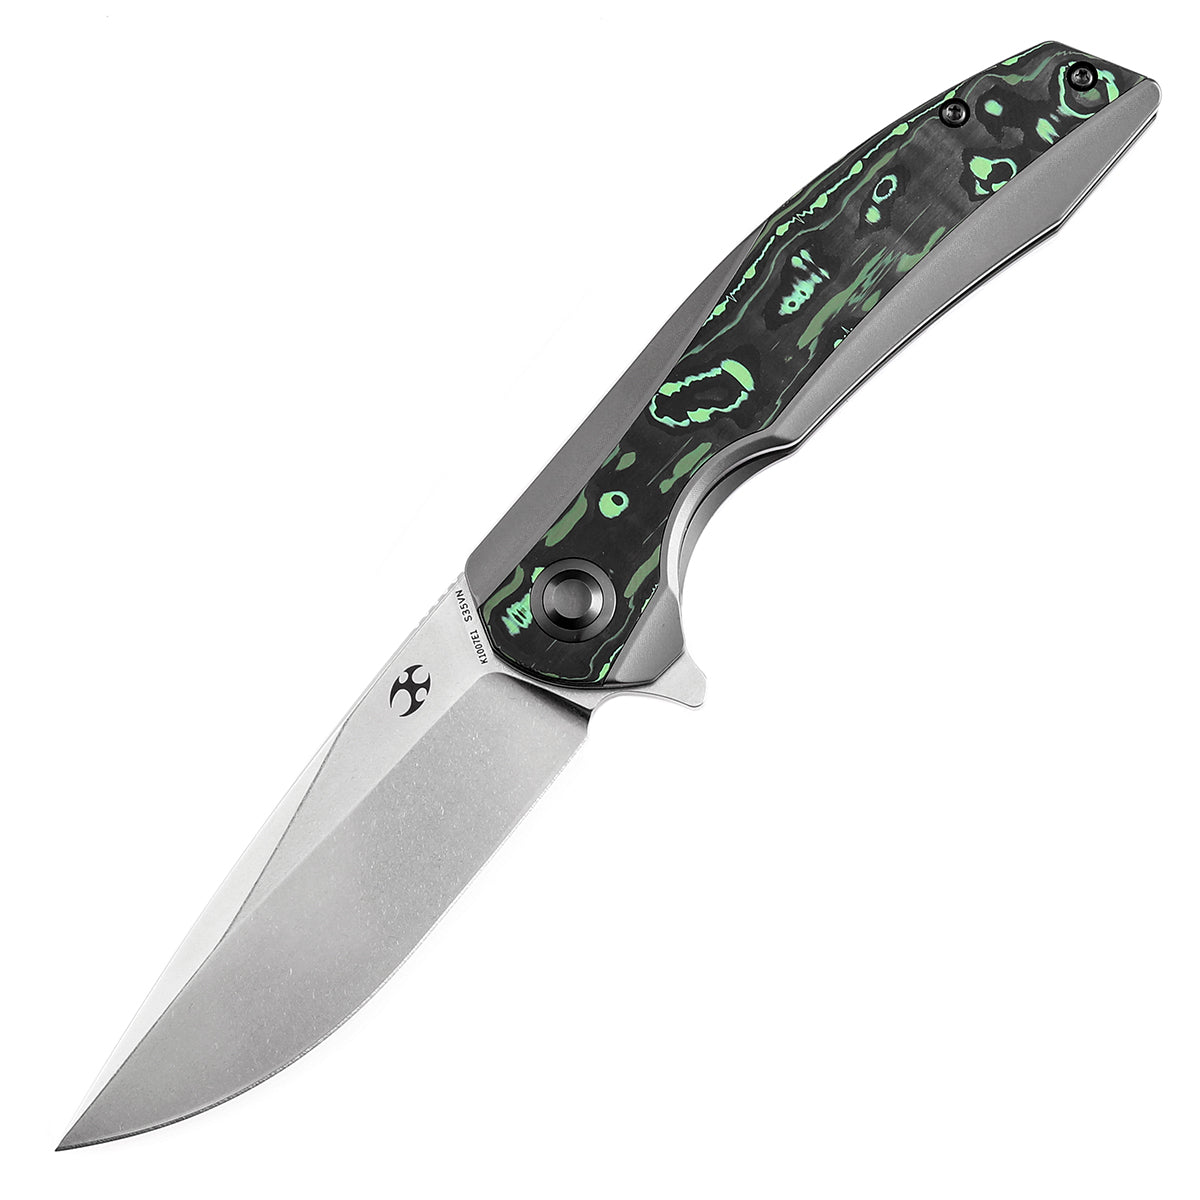 Kansept Accipiter Flipper Knife K1007E1 CPM S35VN Blade Titanium and Green Carbon Fiber Handle Edc Knives